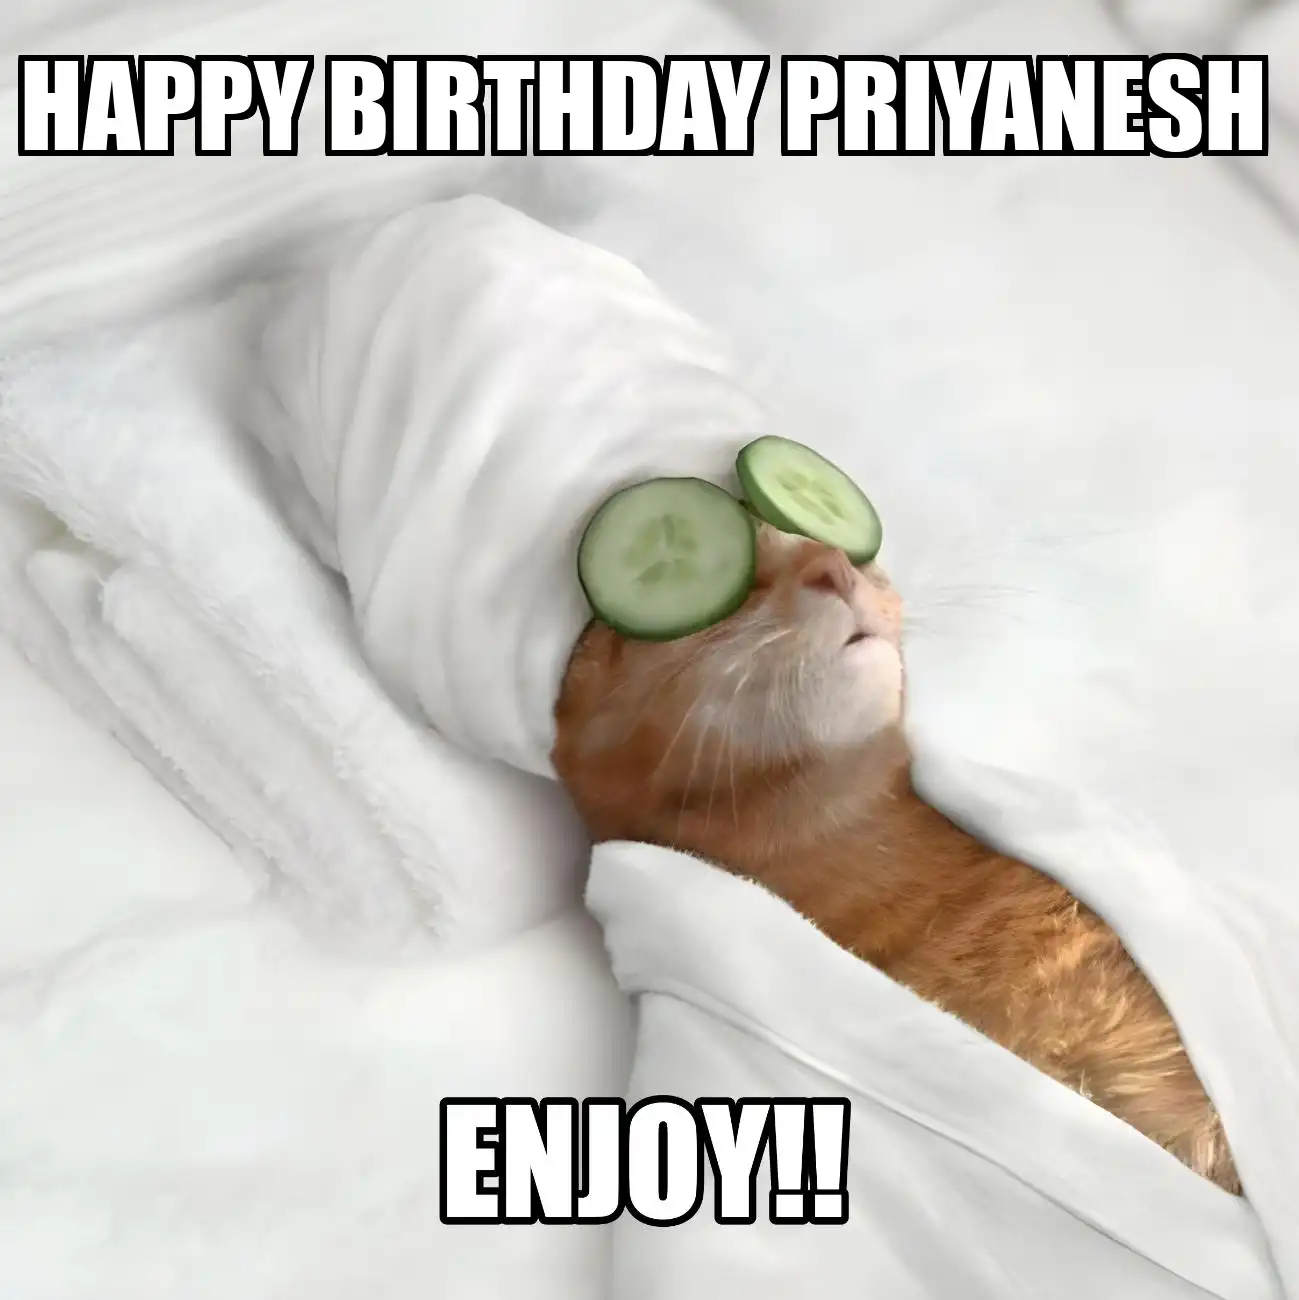 Happy Birthday Priyanesh Enjoy Cat Meme